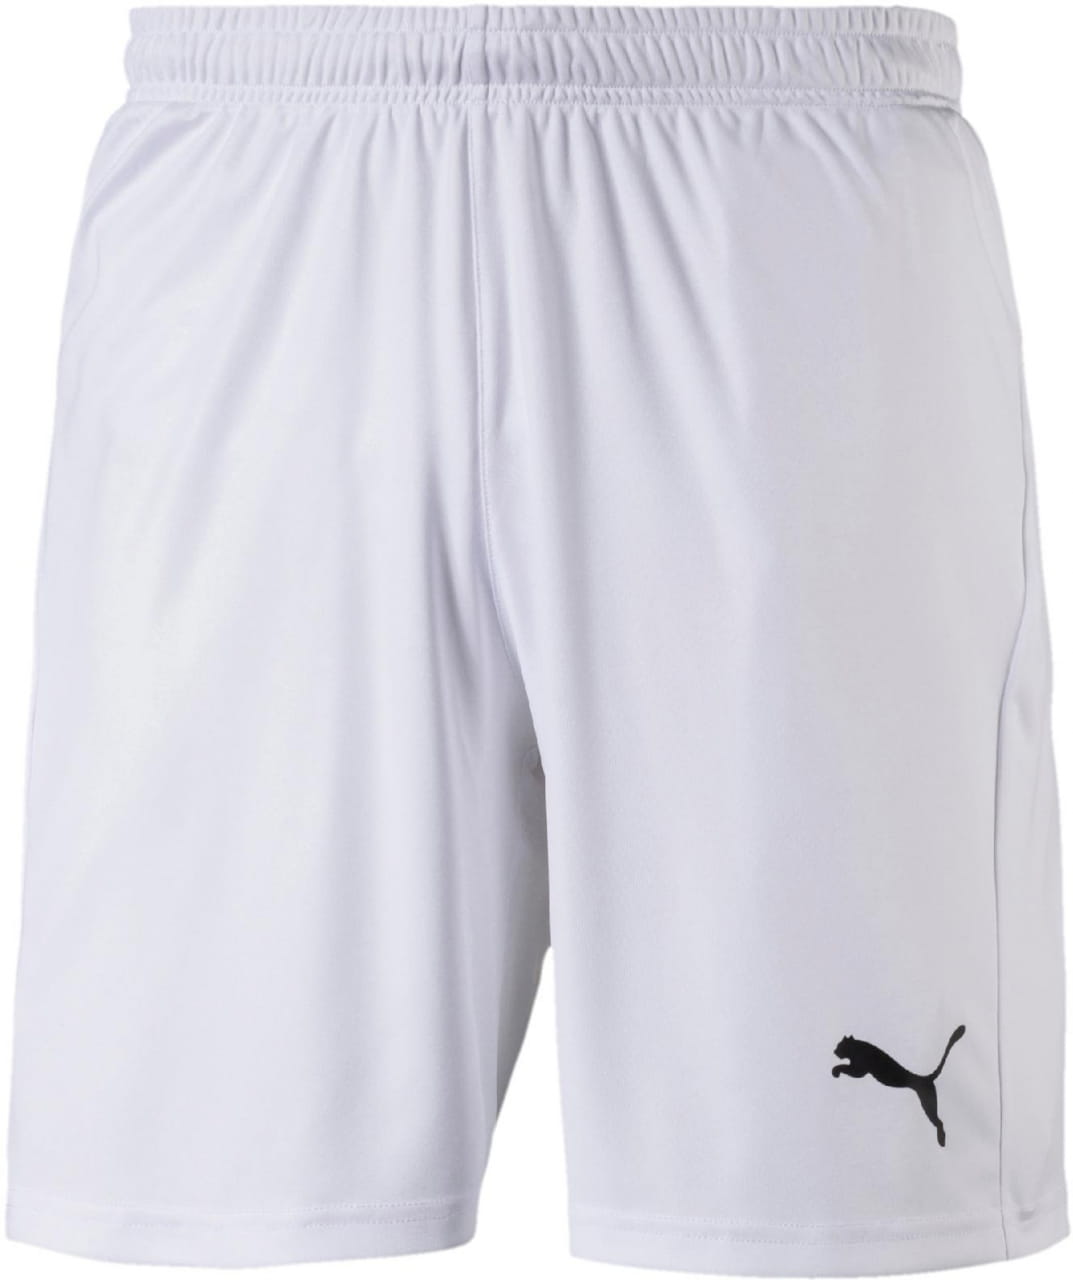 Pánske futbalové kraťasy Puma Liga Shorts Core